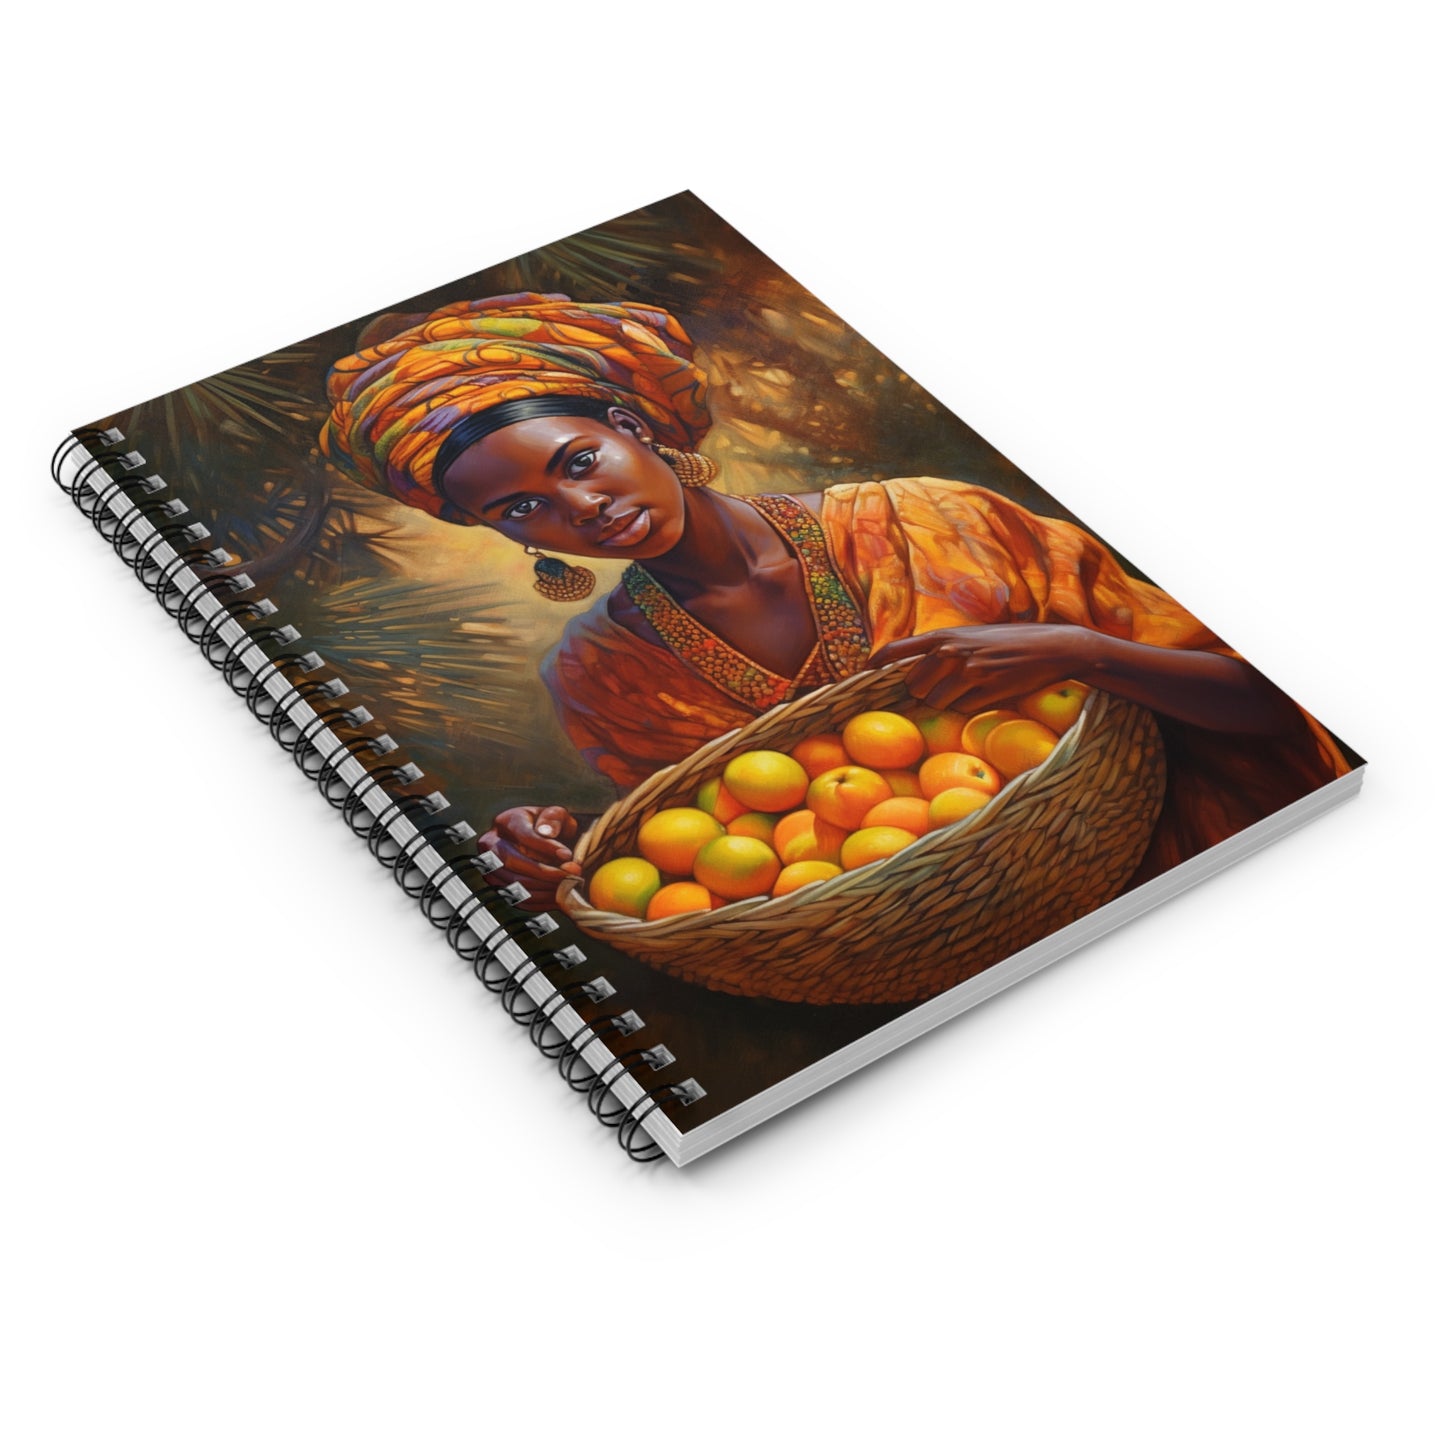 African Queen Reflection Spiritual Healing Hobby Mindset Motivational Journal Spiral Notebook - Ruled Line